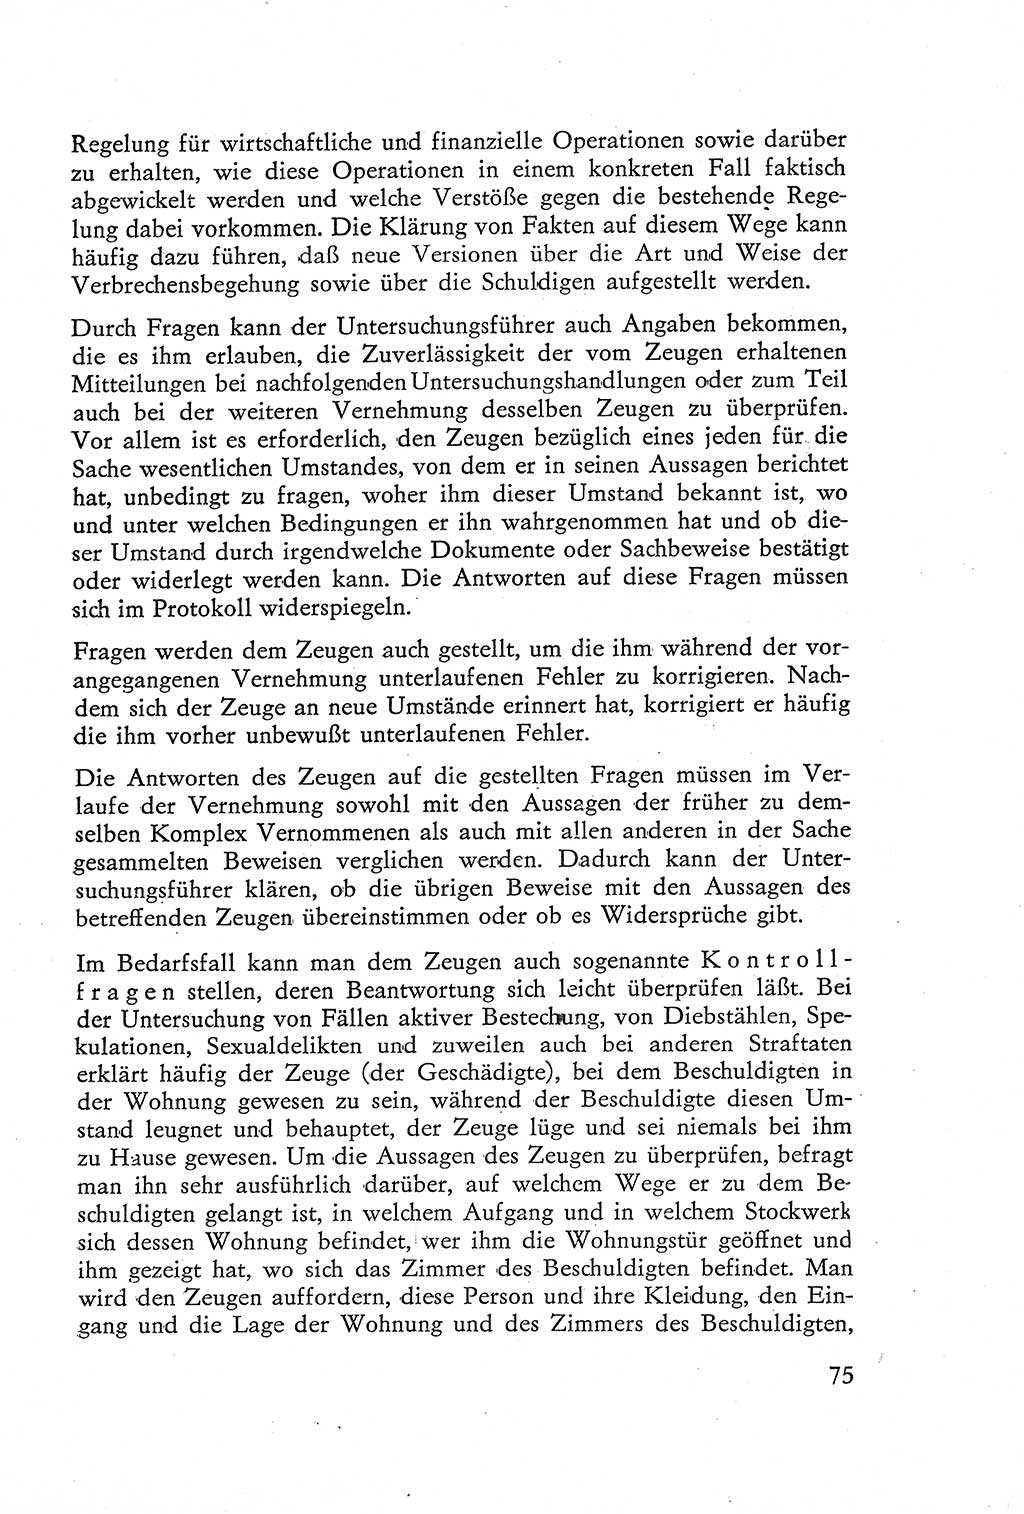 Die Vernehmung [Deutsche Demokratische Republik (DDR)] 1960, Seite 75 (Vern. DDR 1960, S. 75)